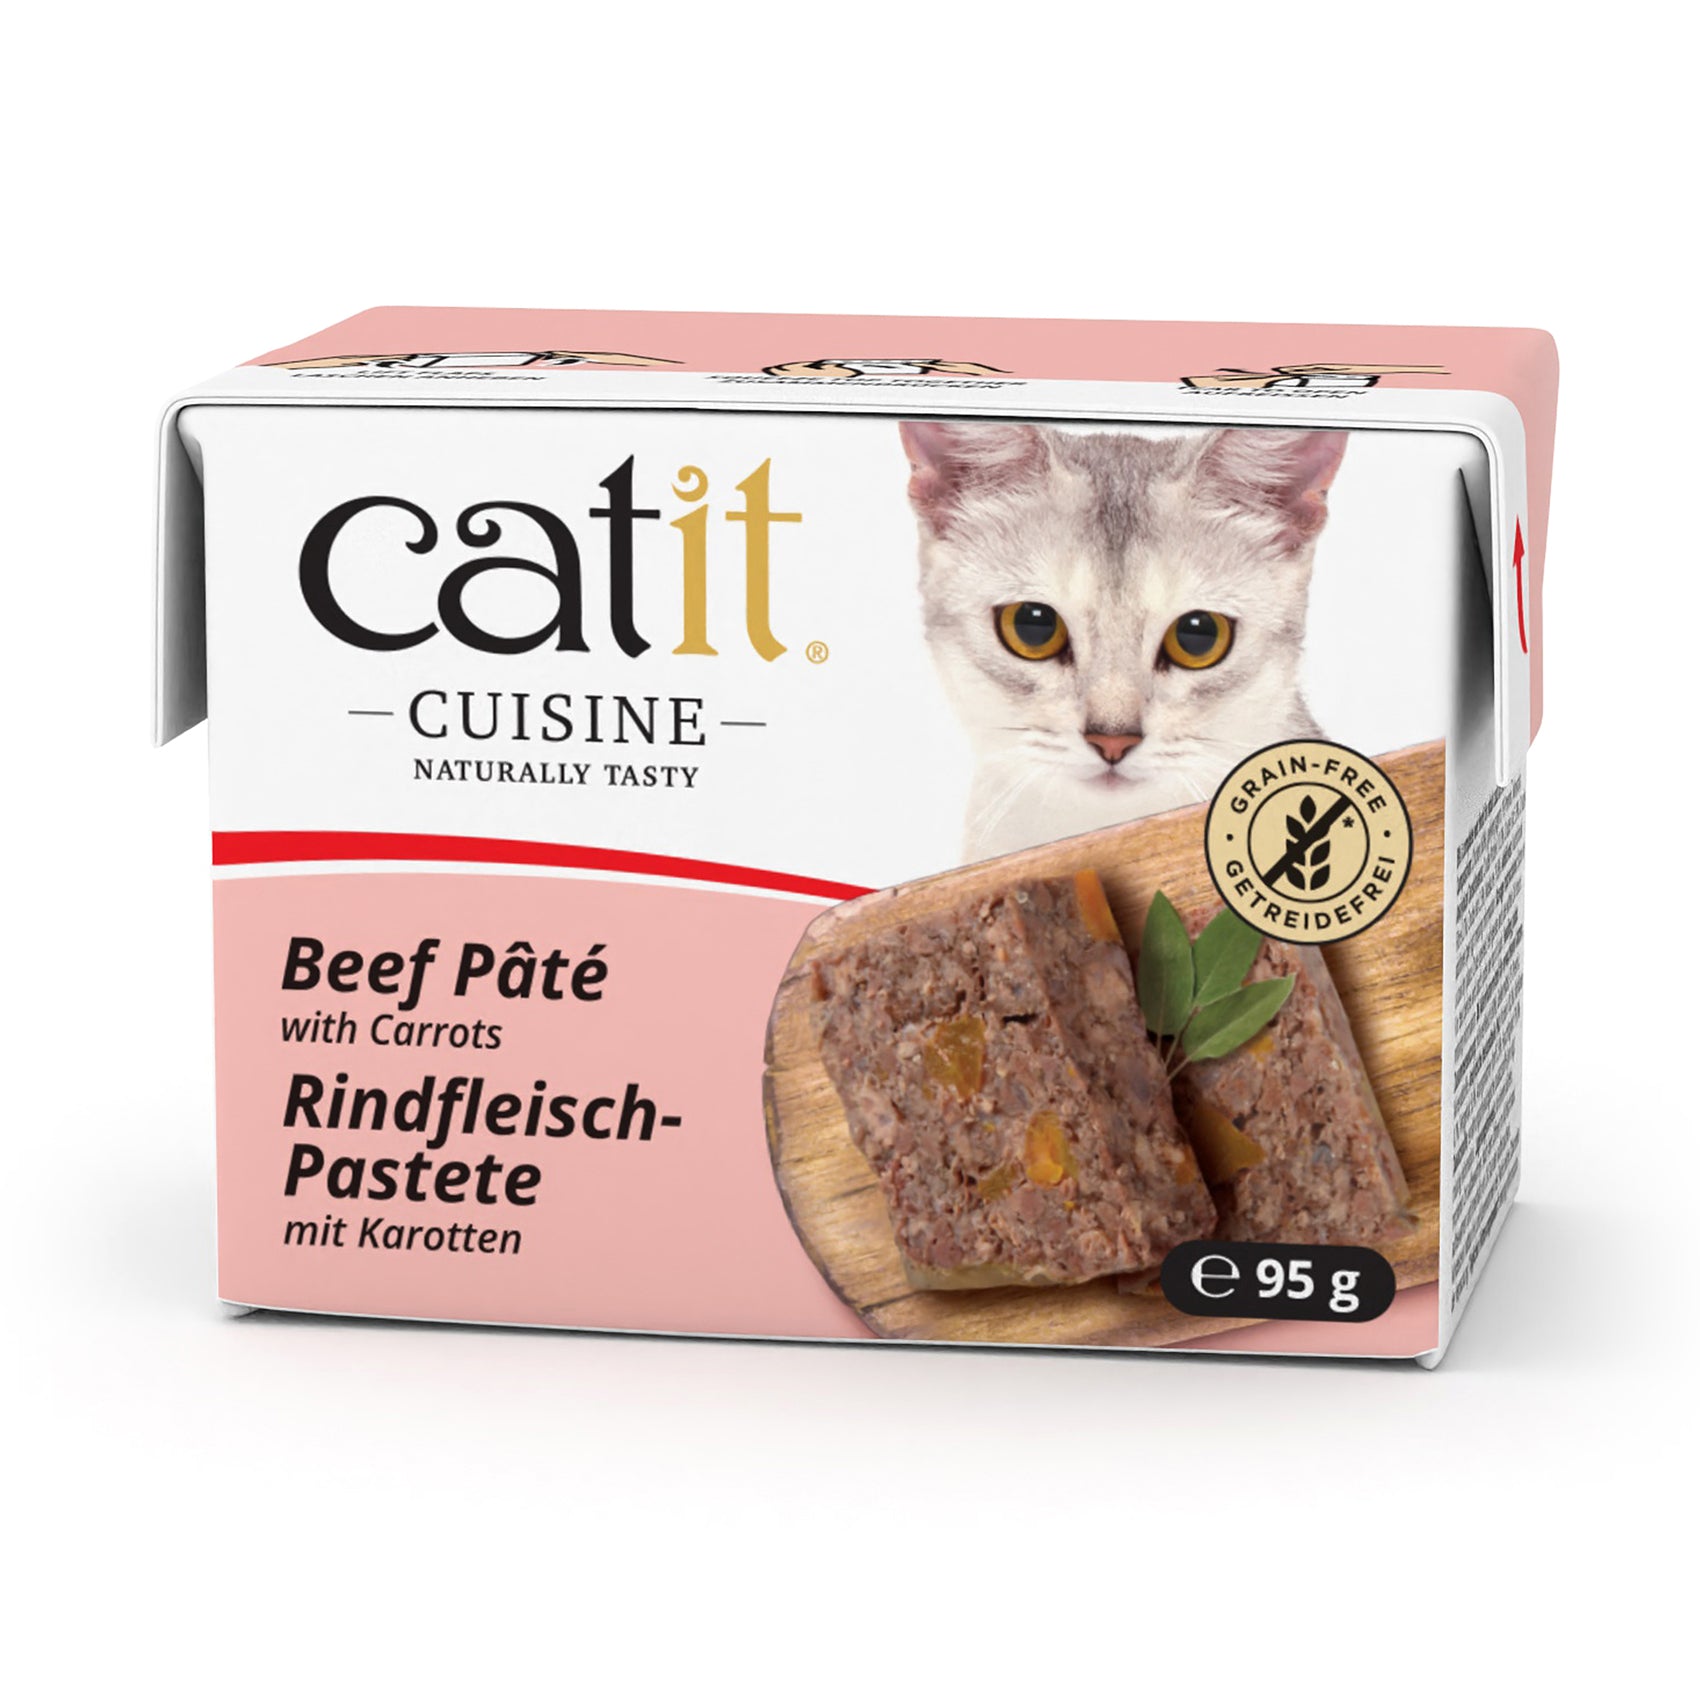 Catit Cuisine Cat Wet Food Beef Pate 95g